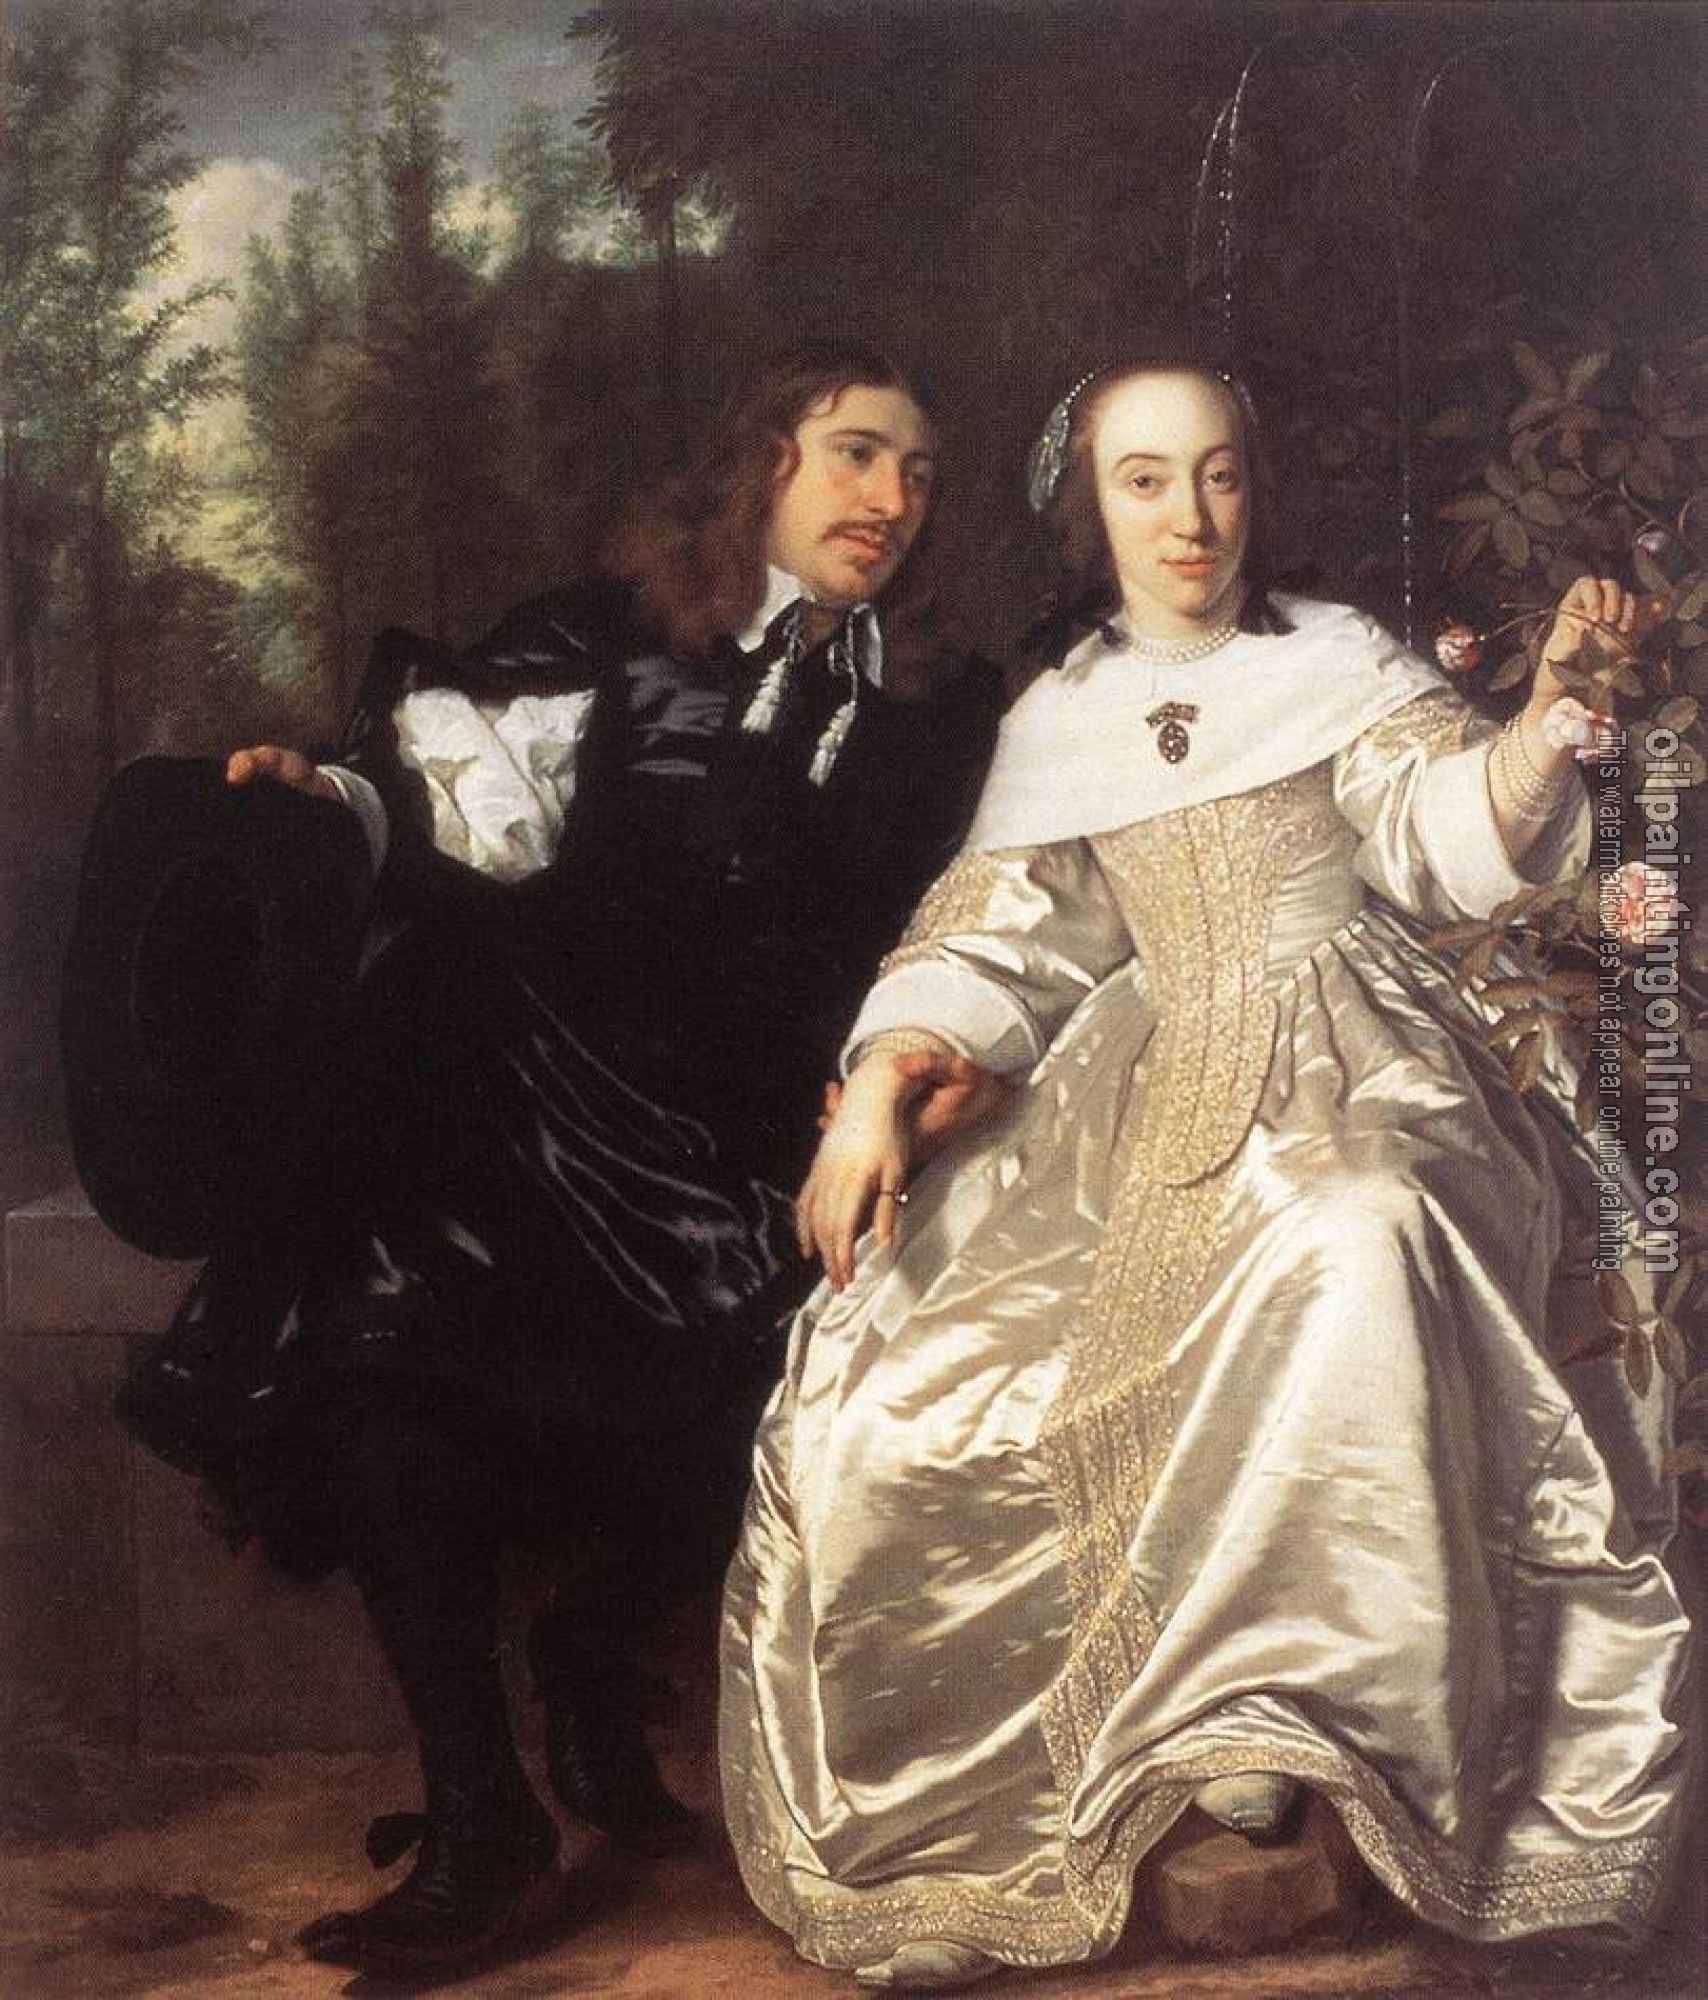 Helst, Bartholomeus van der - Abraham del Court and Maria de Keersegieter